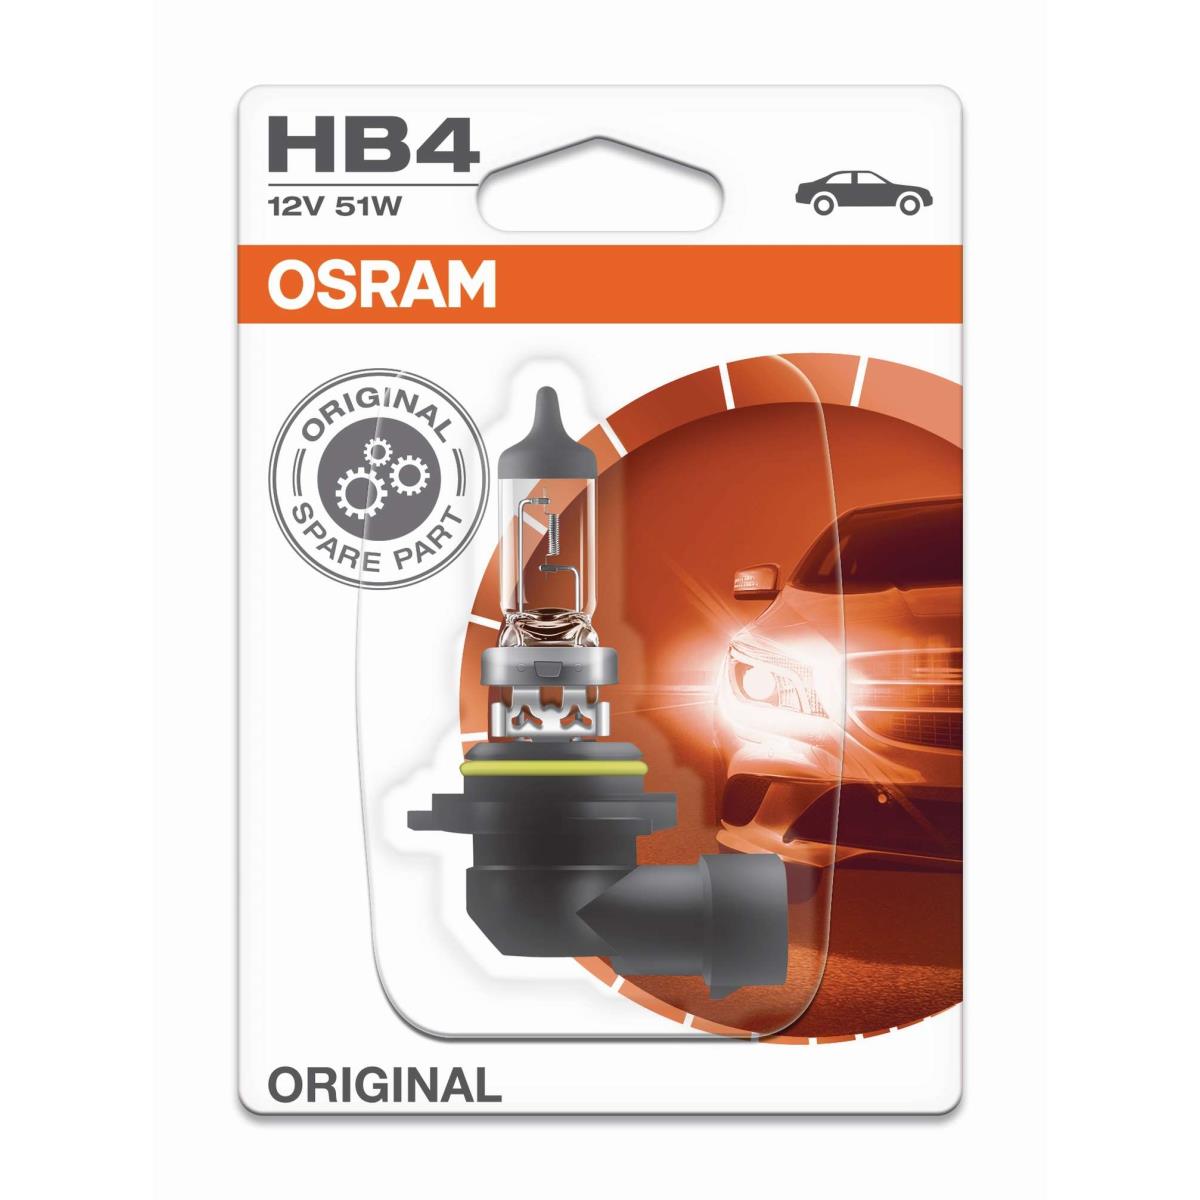 OSRAM Line HB4 Halogen 12V 51W Sockel P22d Glühbirne